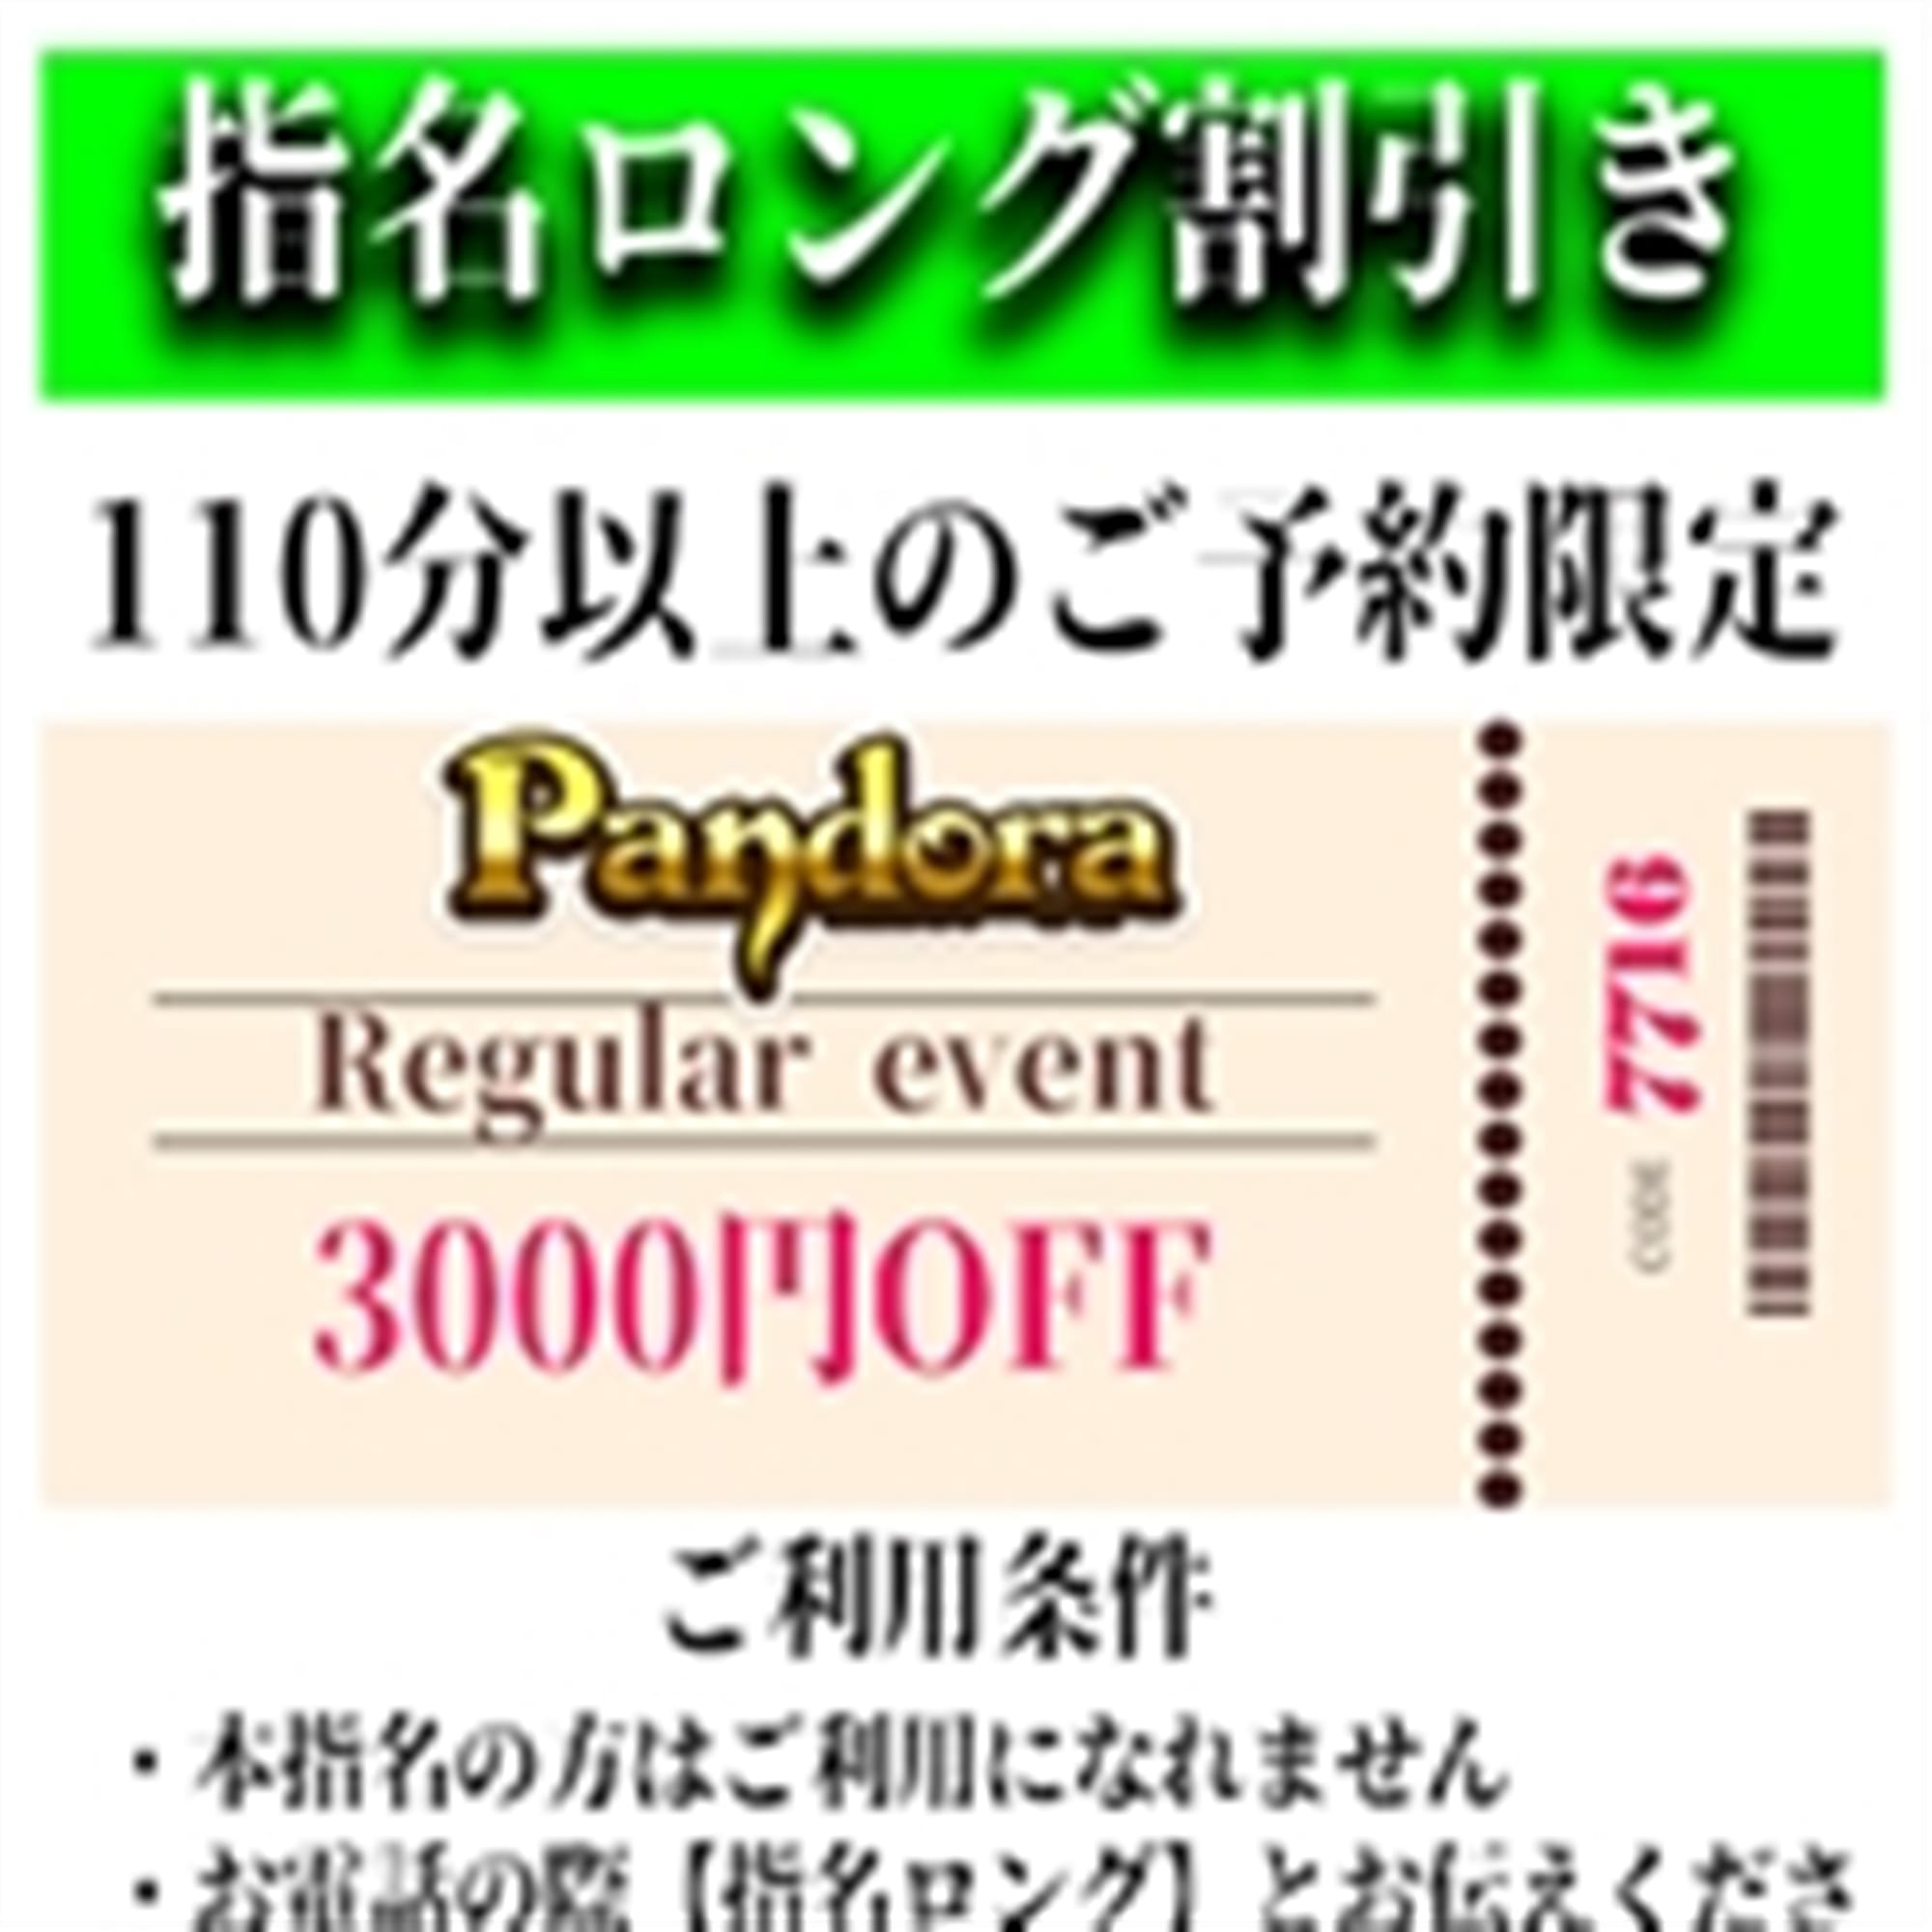 「ご指名のお客様も遊べるロングコース割引」04/27(土) 07:19 | Pandora(パンドラ)新潟のお得なニュース